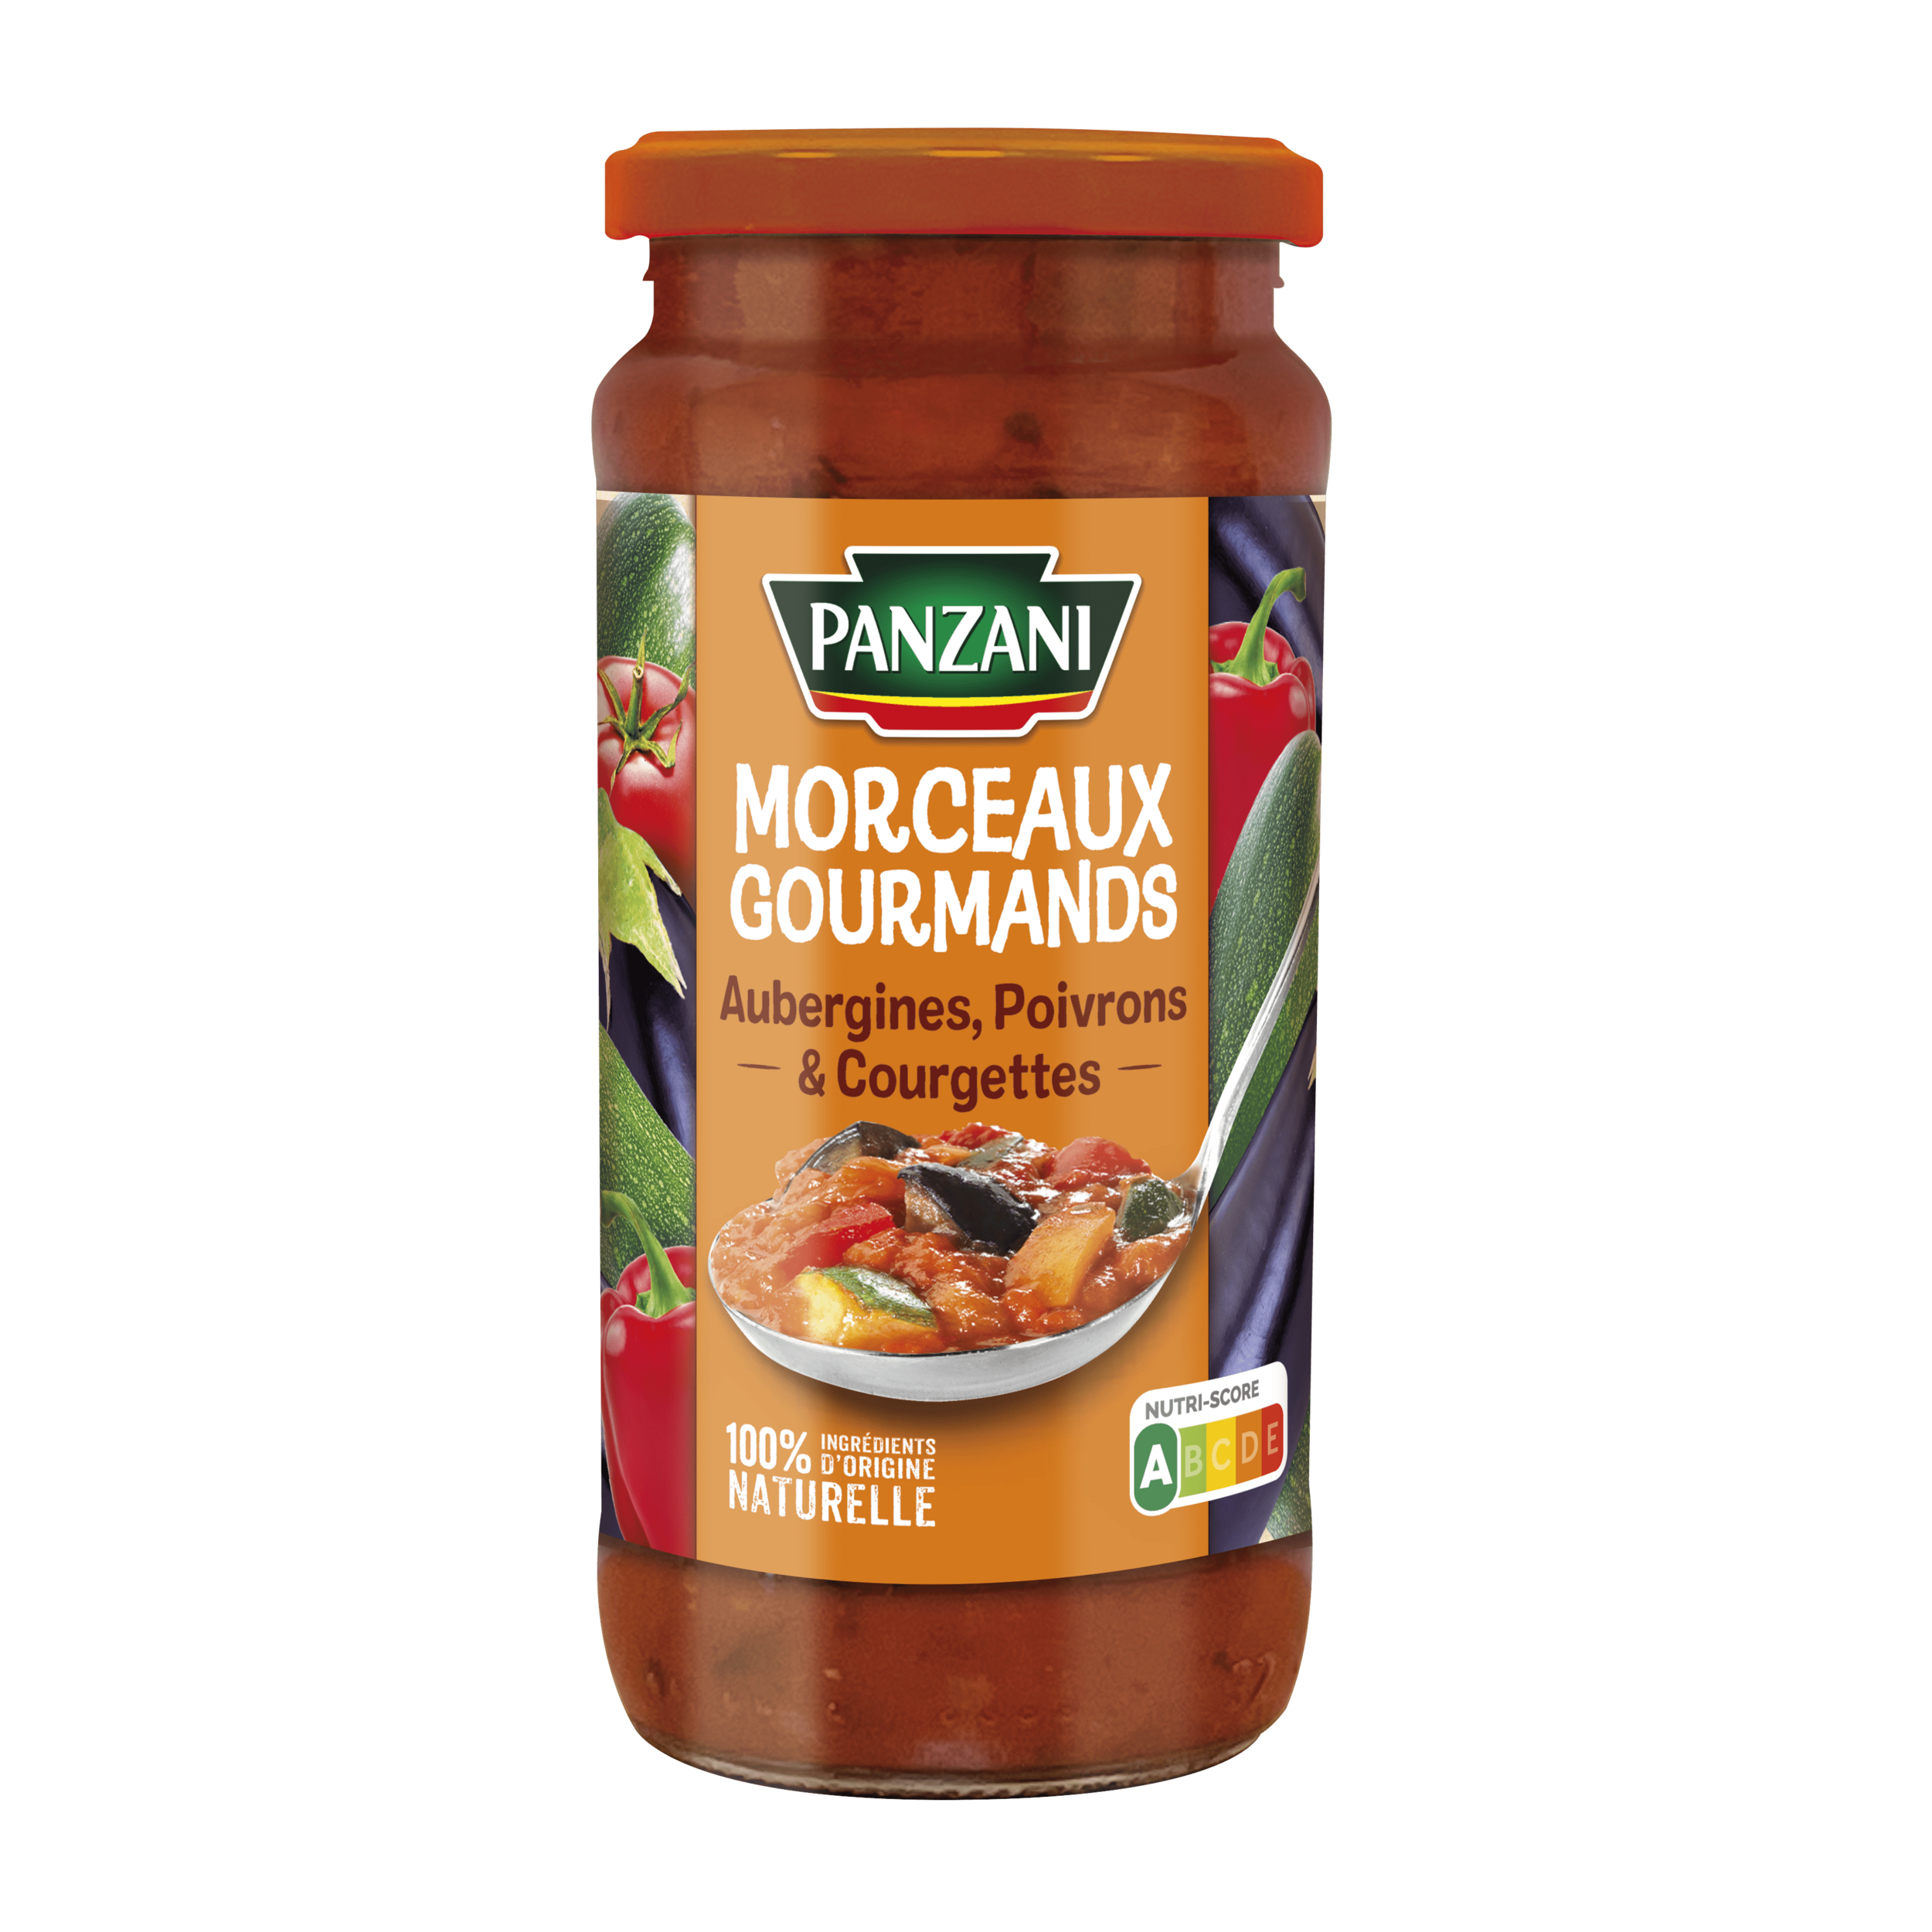 2209123-pan-sauce-morceaux-gourmand-aubergines-poivrons-805579-2d-face-hd